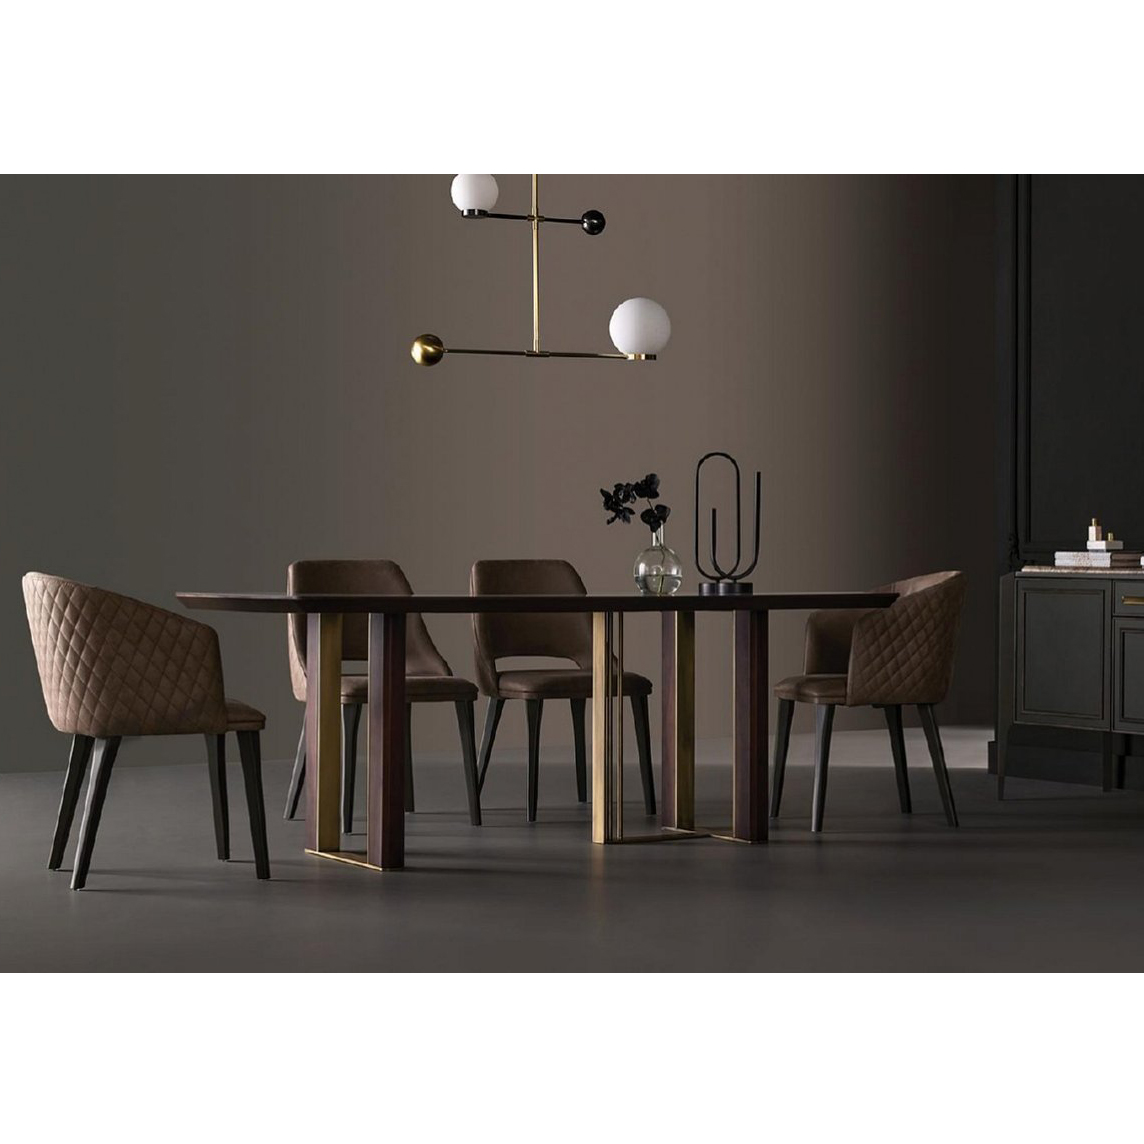 Стол обеденный Enza Home Sirona, прямоугольный, размер 260х104х76 см, стеклянная поверхность07.182.0572.0000.0216.0466.